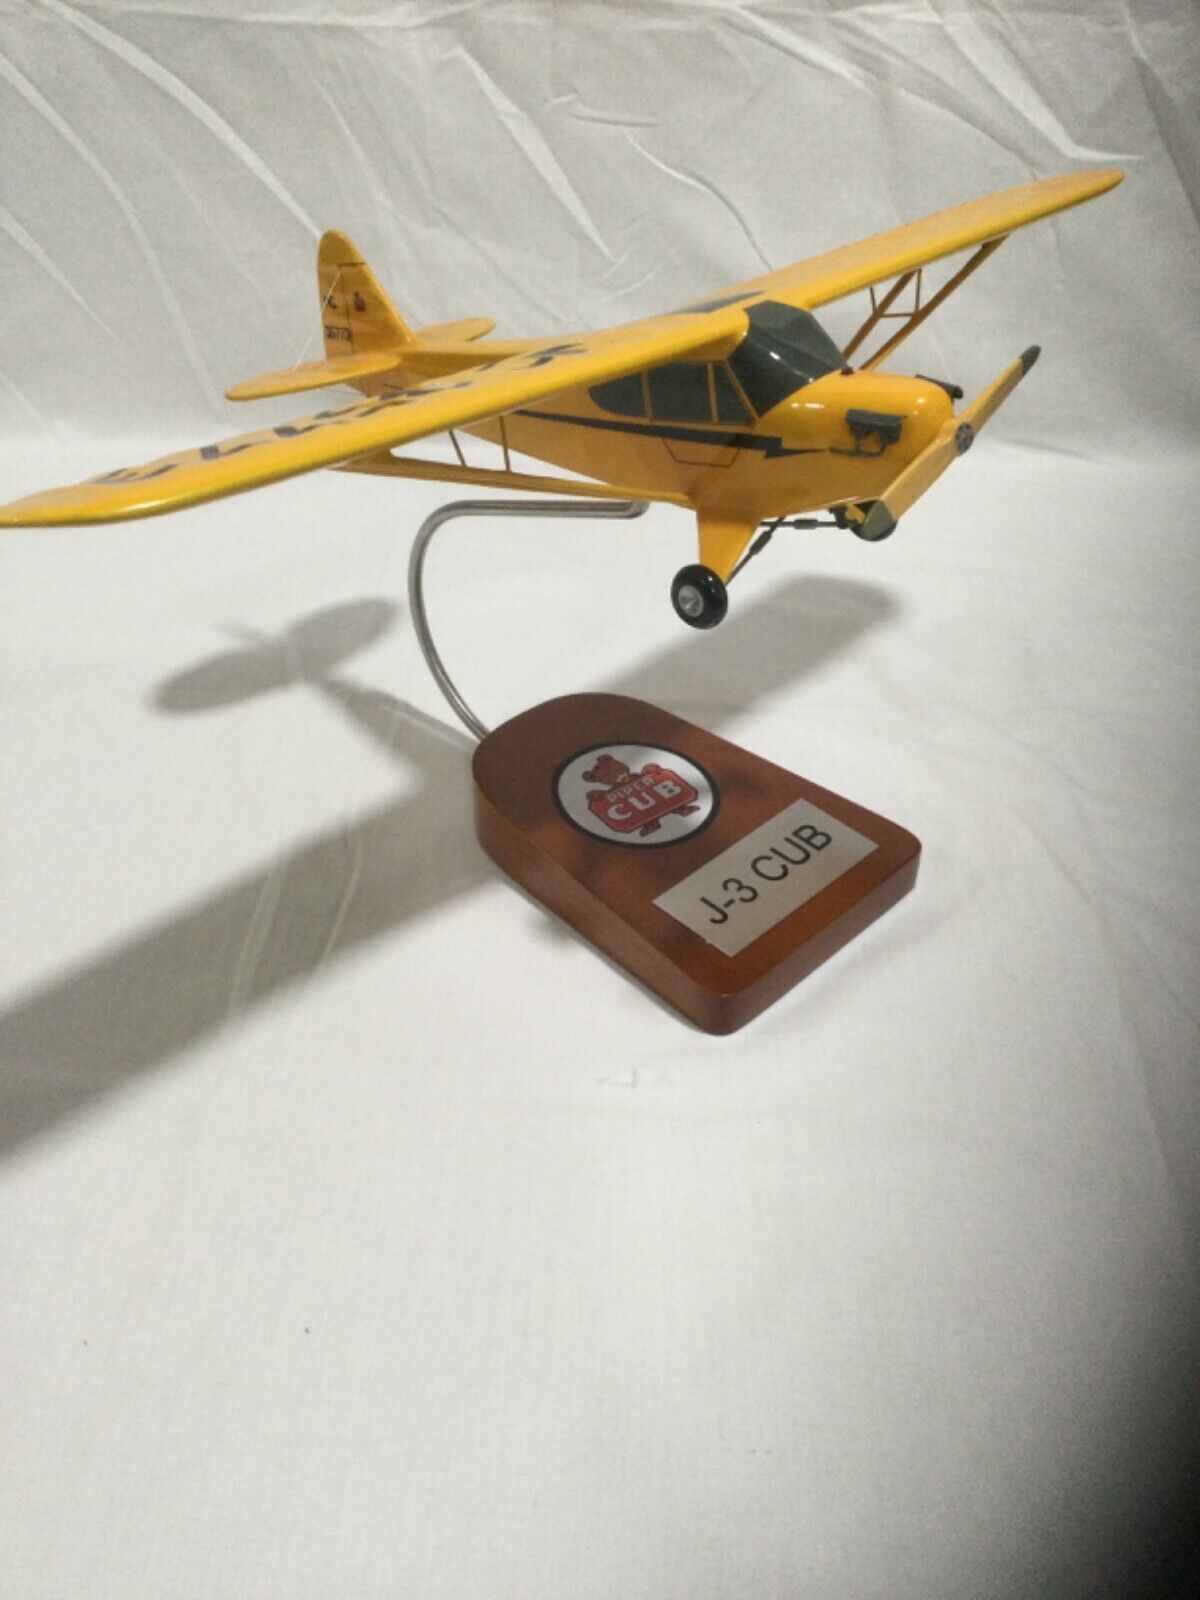 Piper J-3 “Cub” scale model